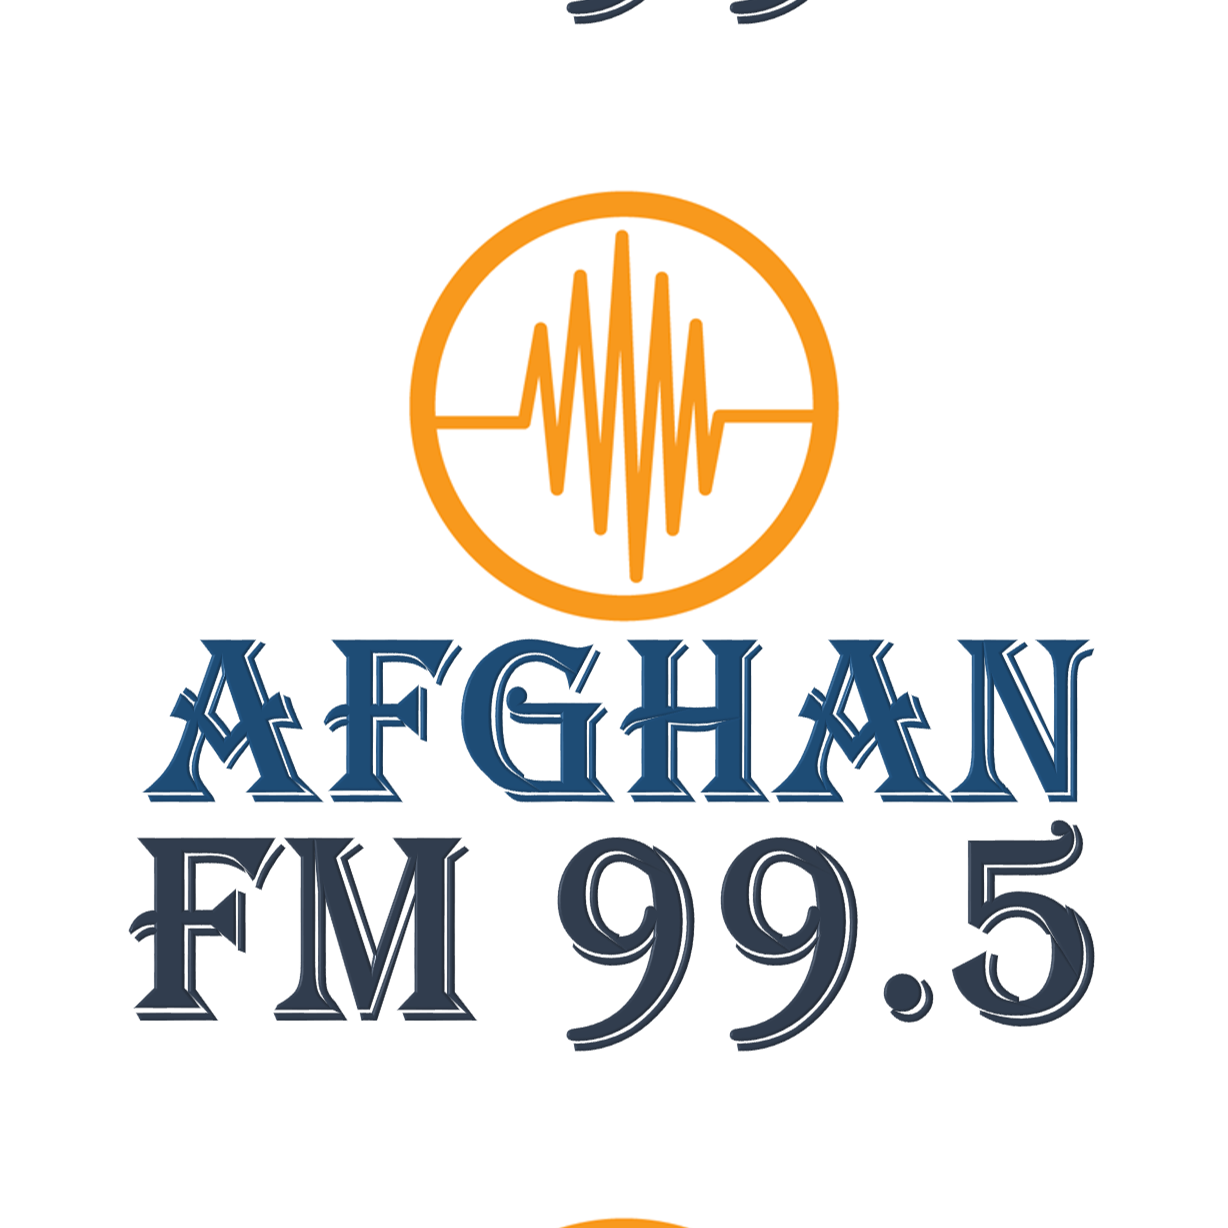 AfghanFM99.5